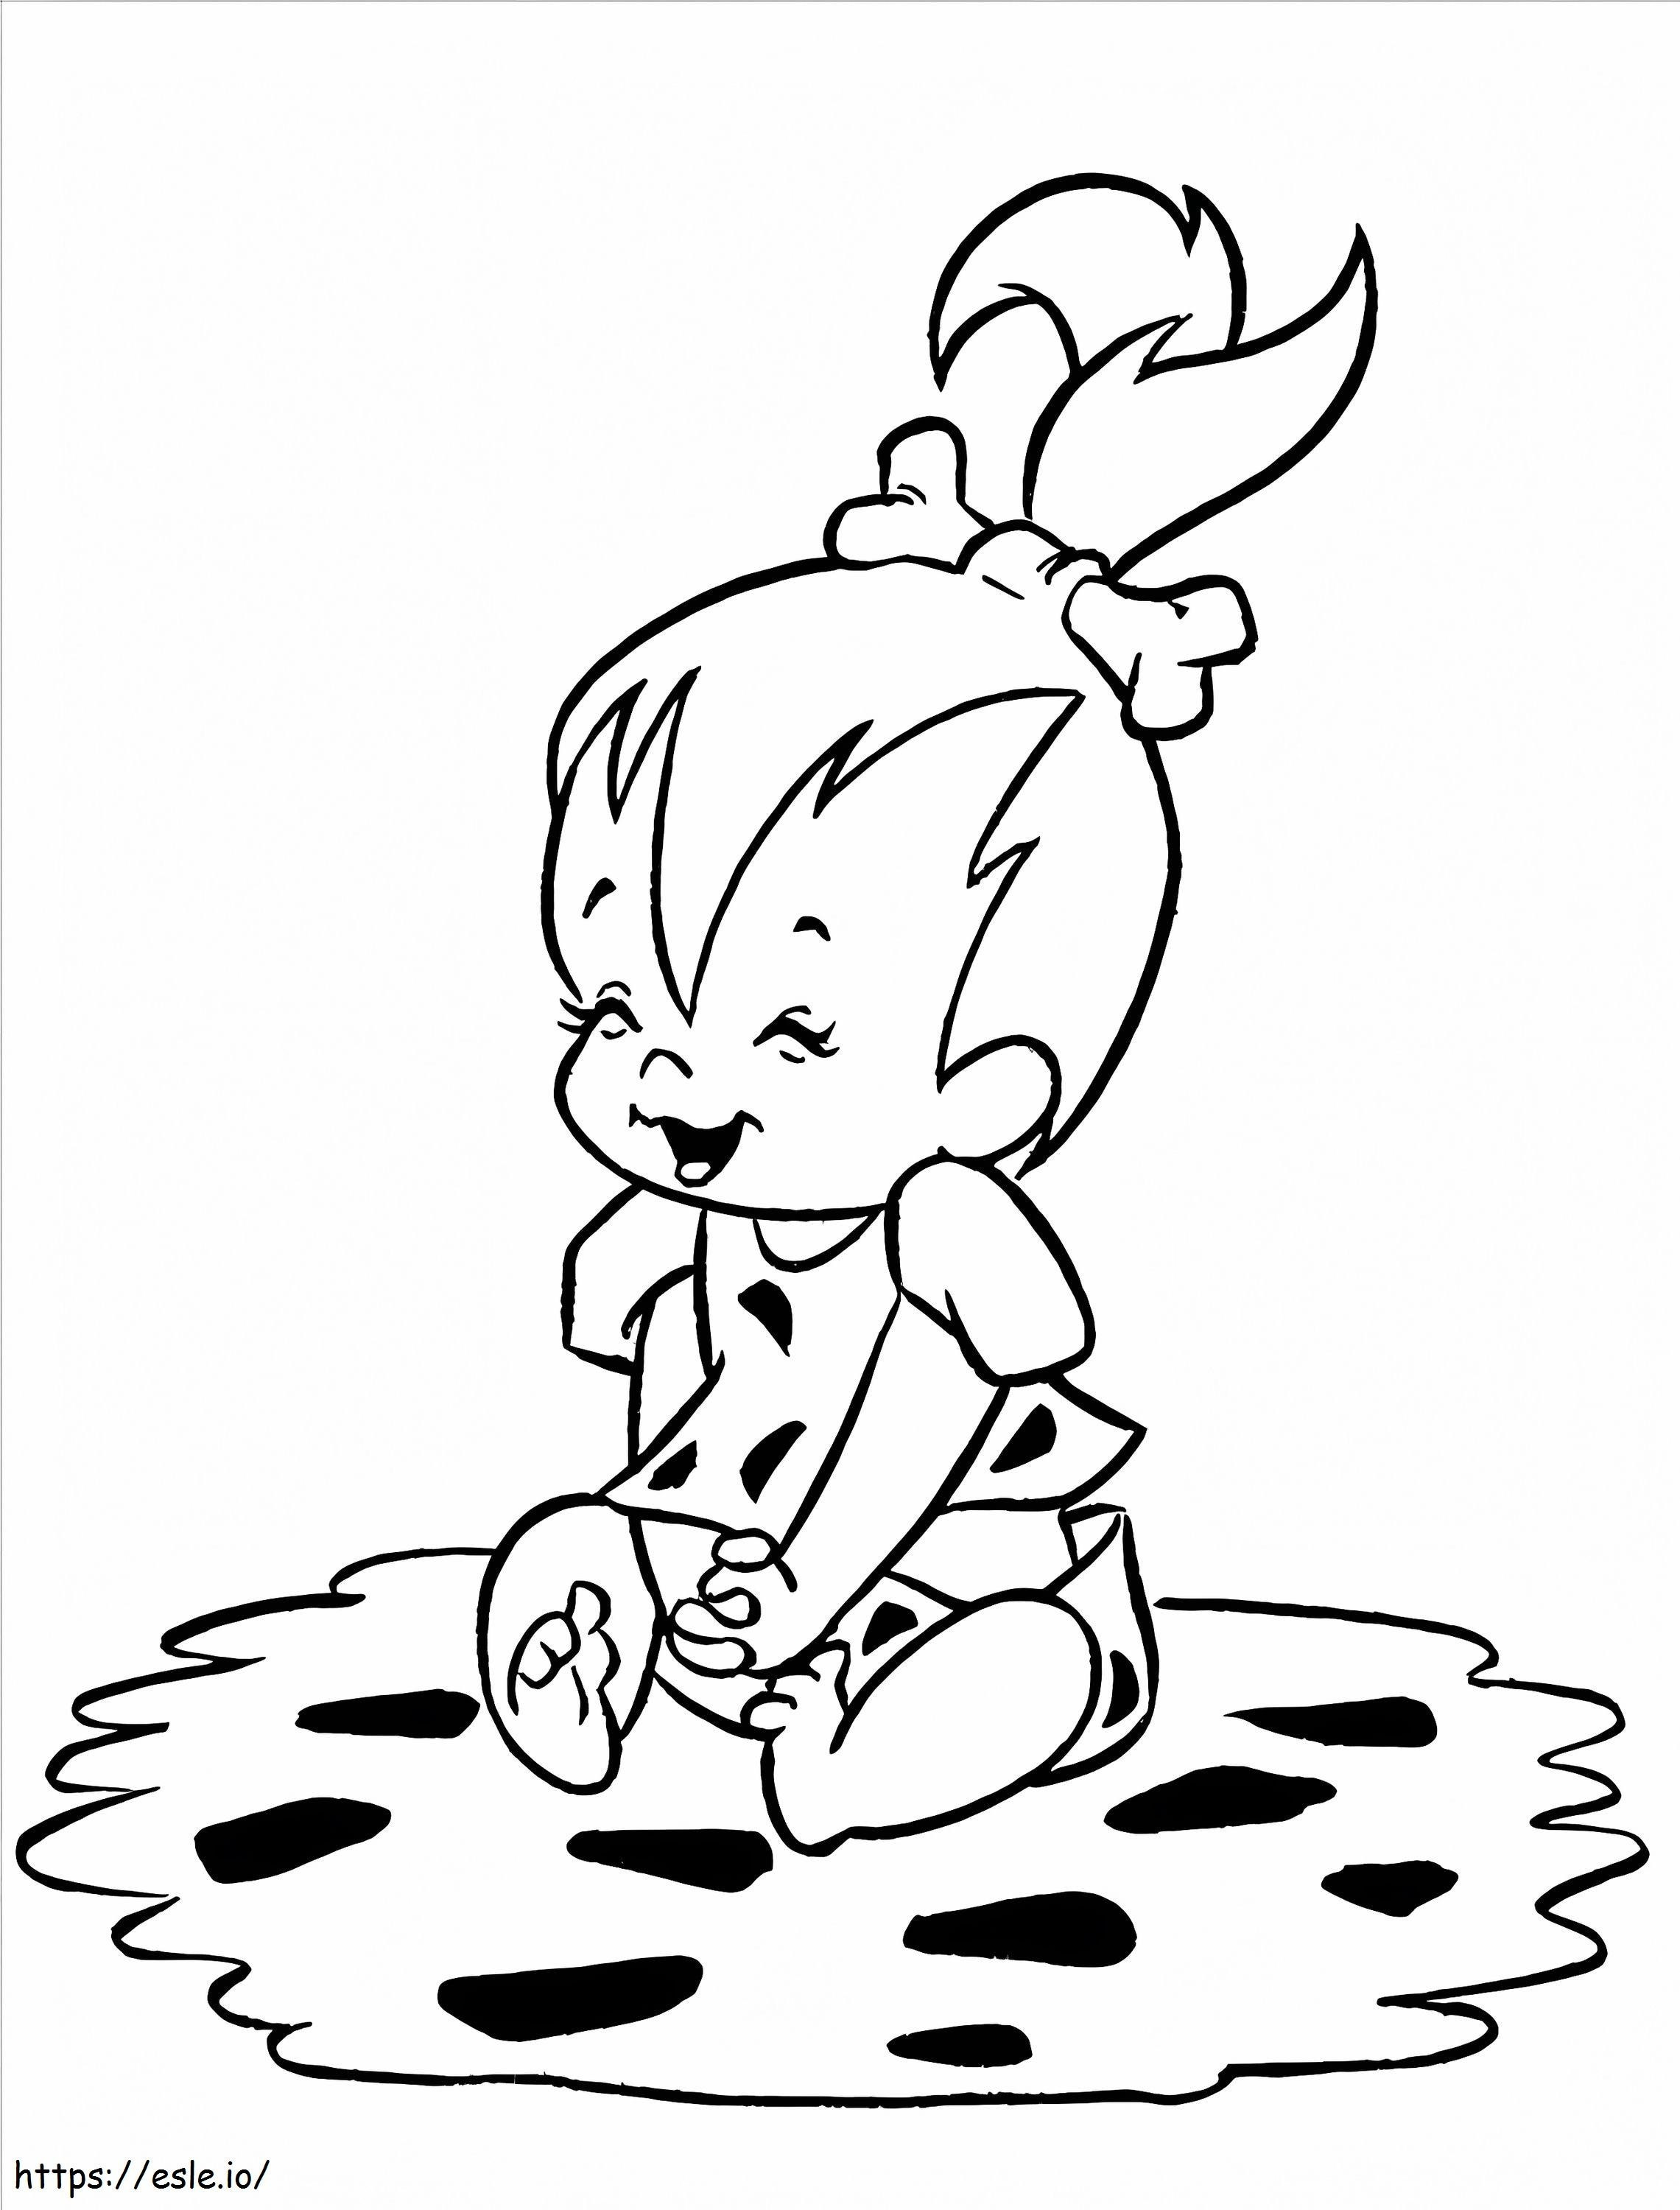 Happy Pebbles Flintstone coloring page